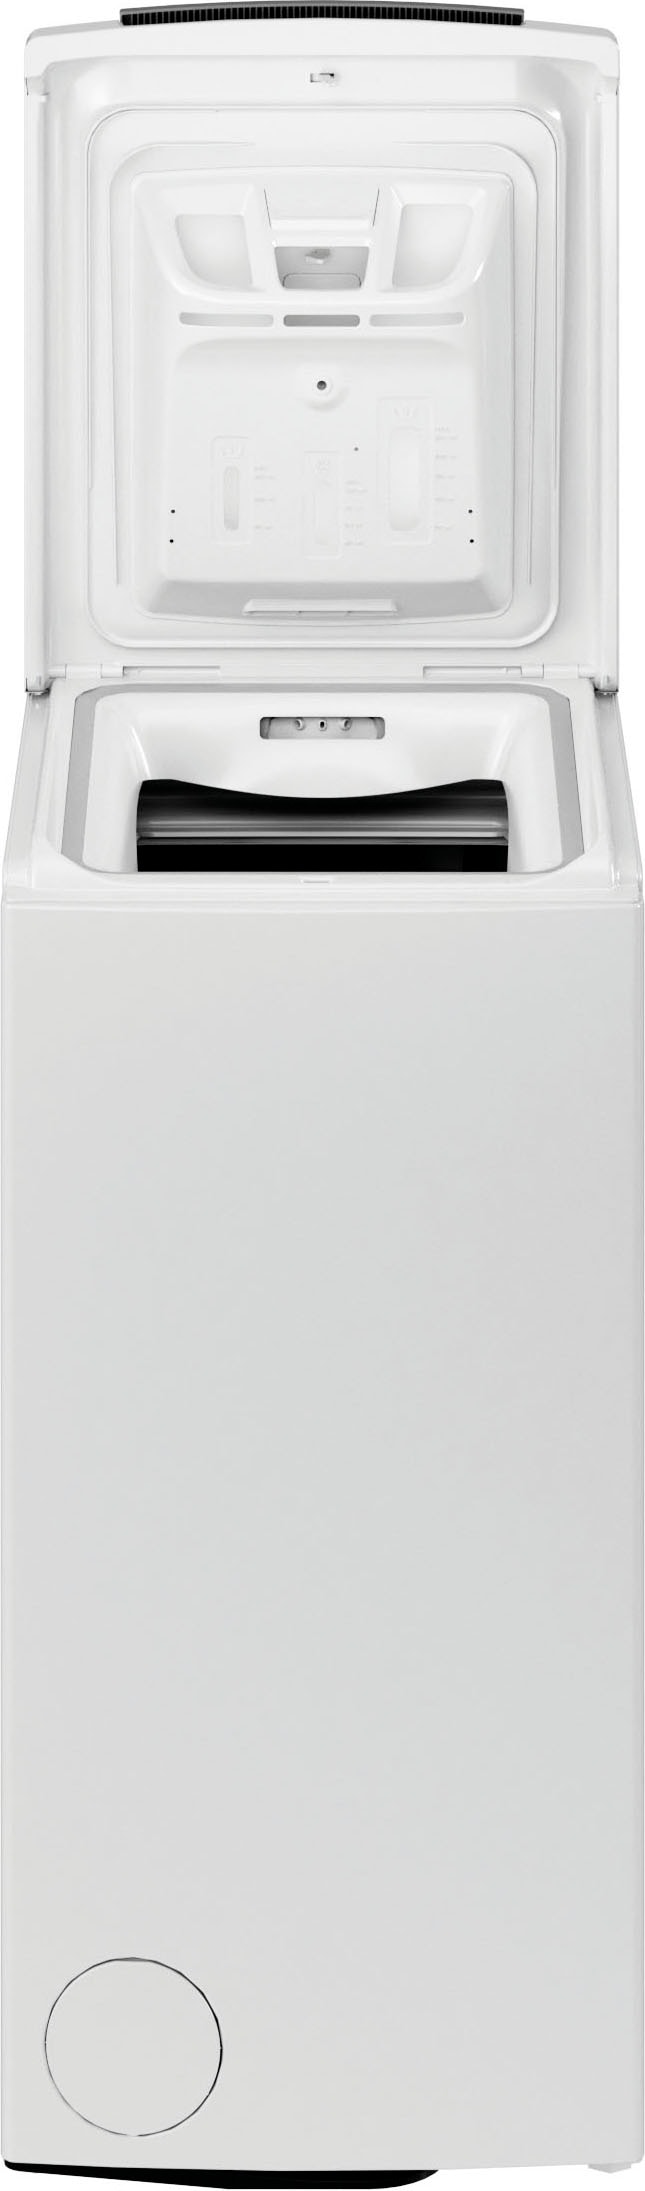 BAUKNECHT Waschmaschine Toplader »WMT 6513 B5«, WMT 6513 B5, 6 kg, 1200 U/min